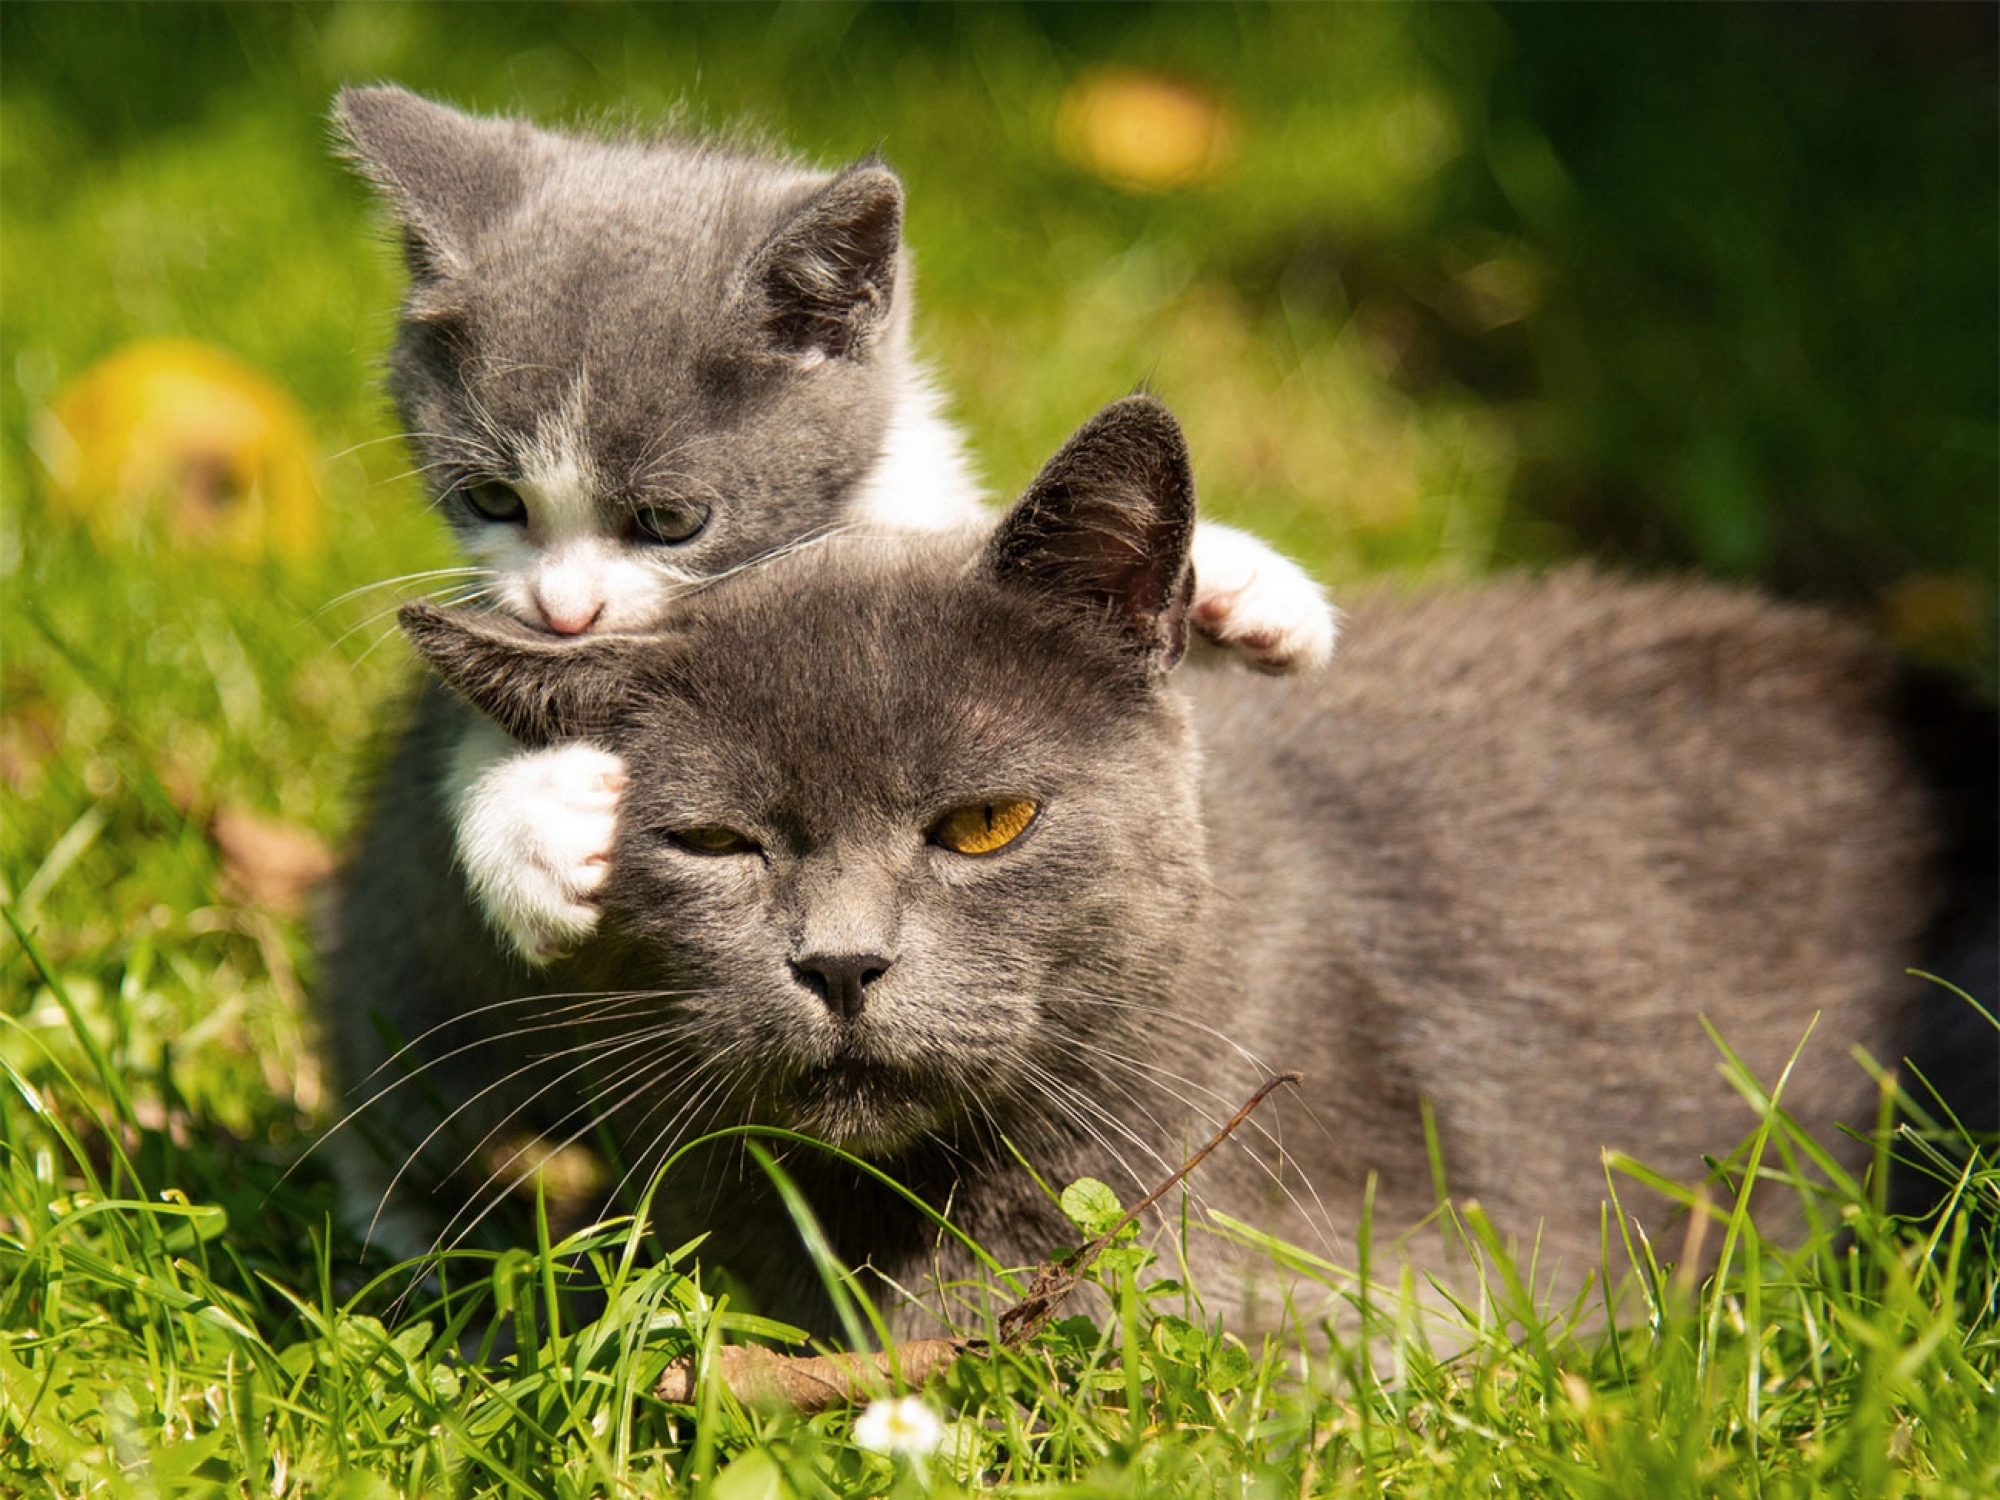 Voordelen van kattensnoepjes | Voskes